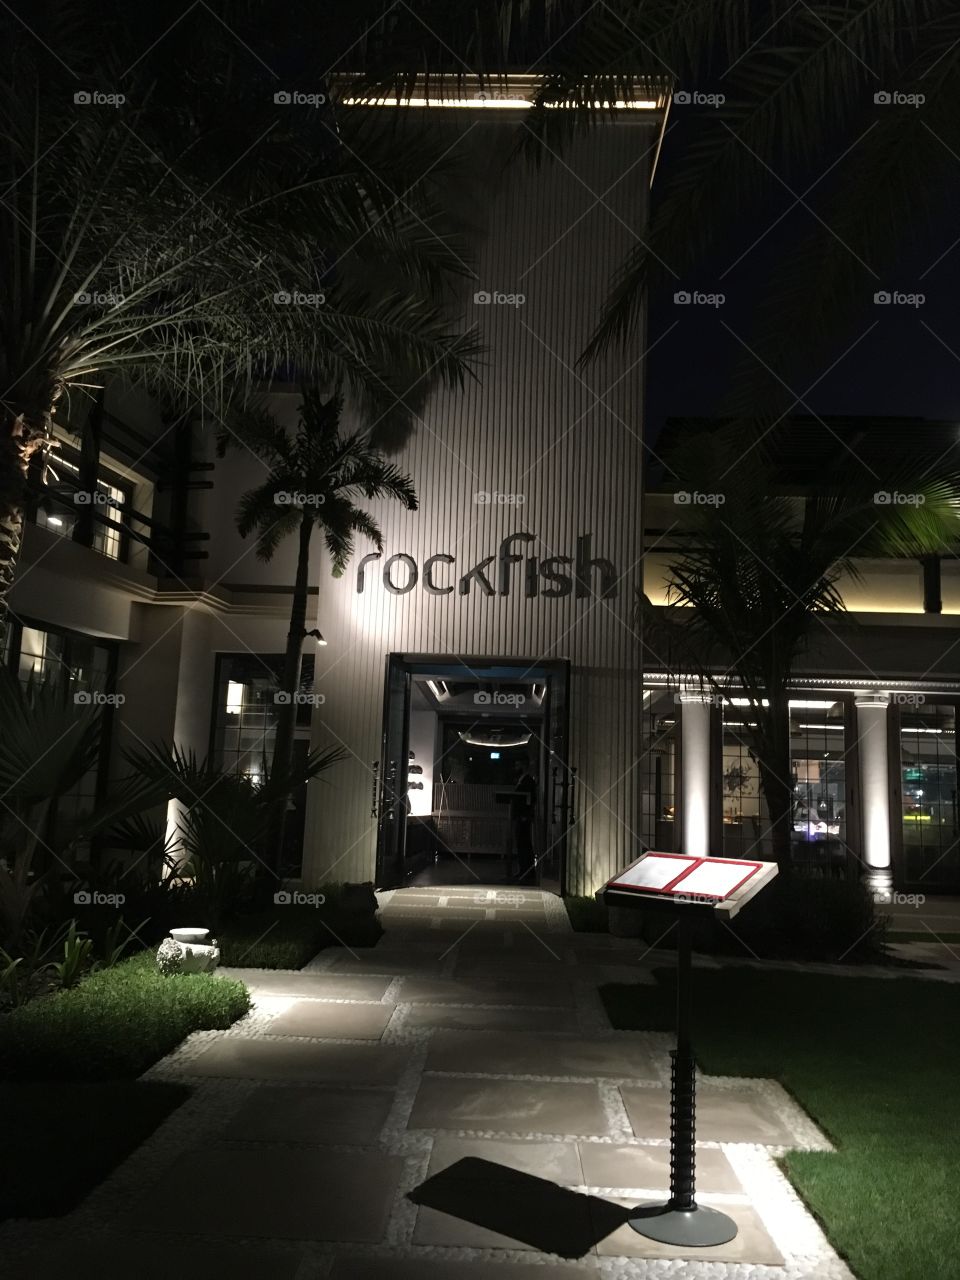 Rockfish restaurant